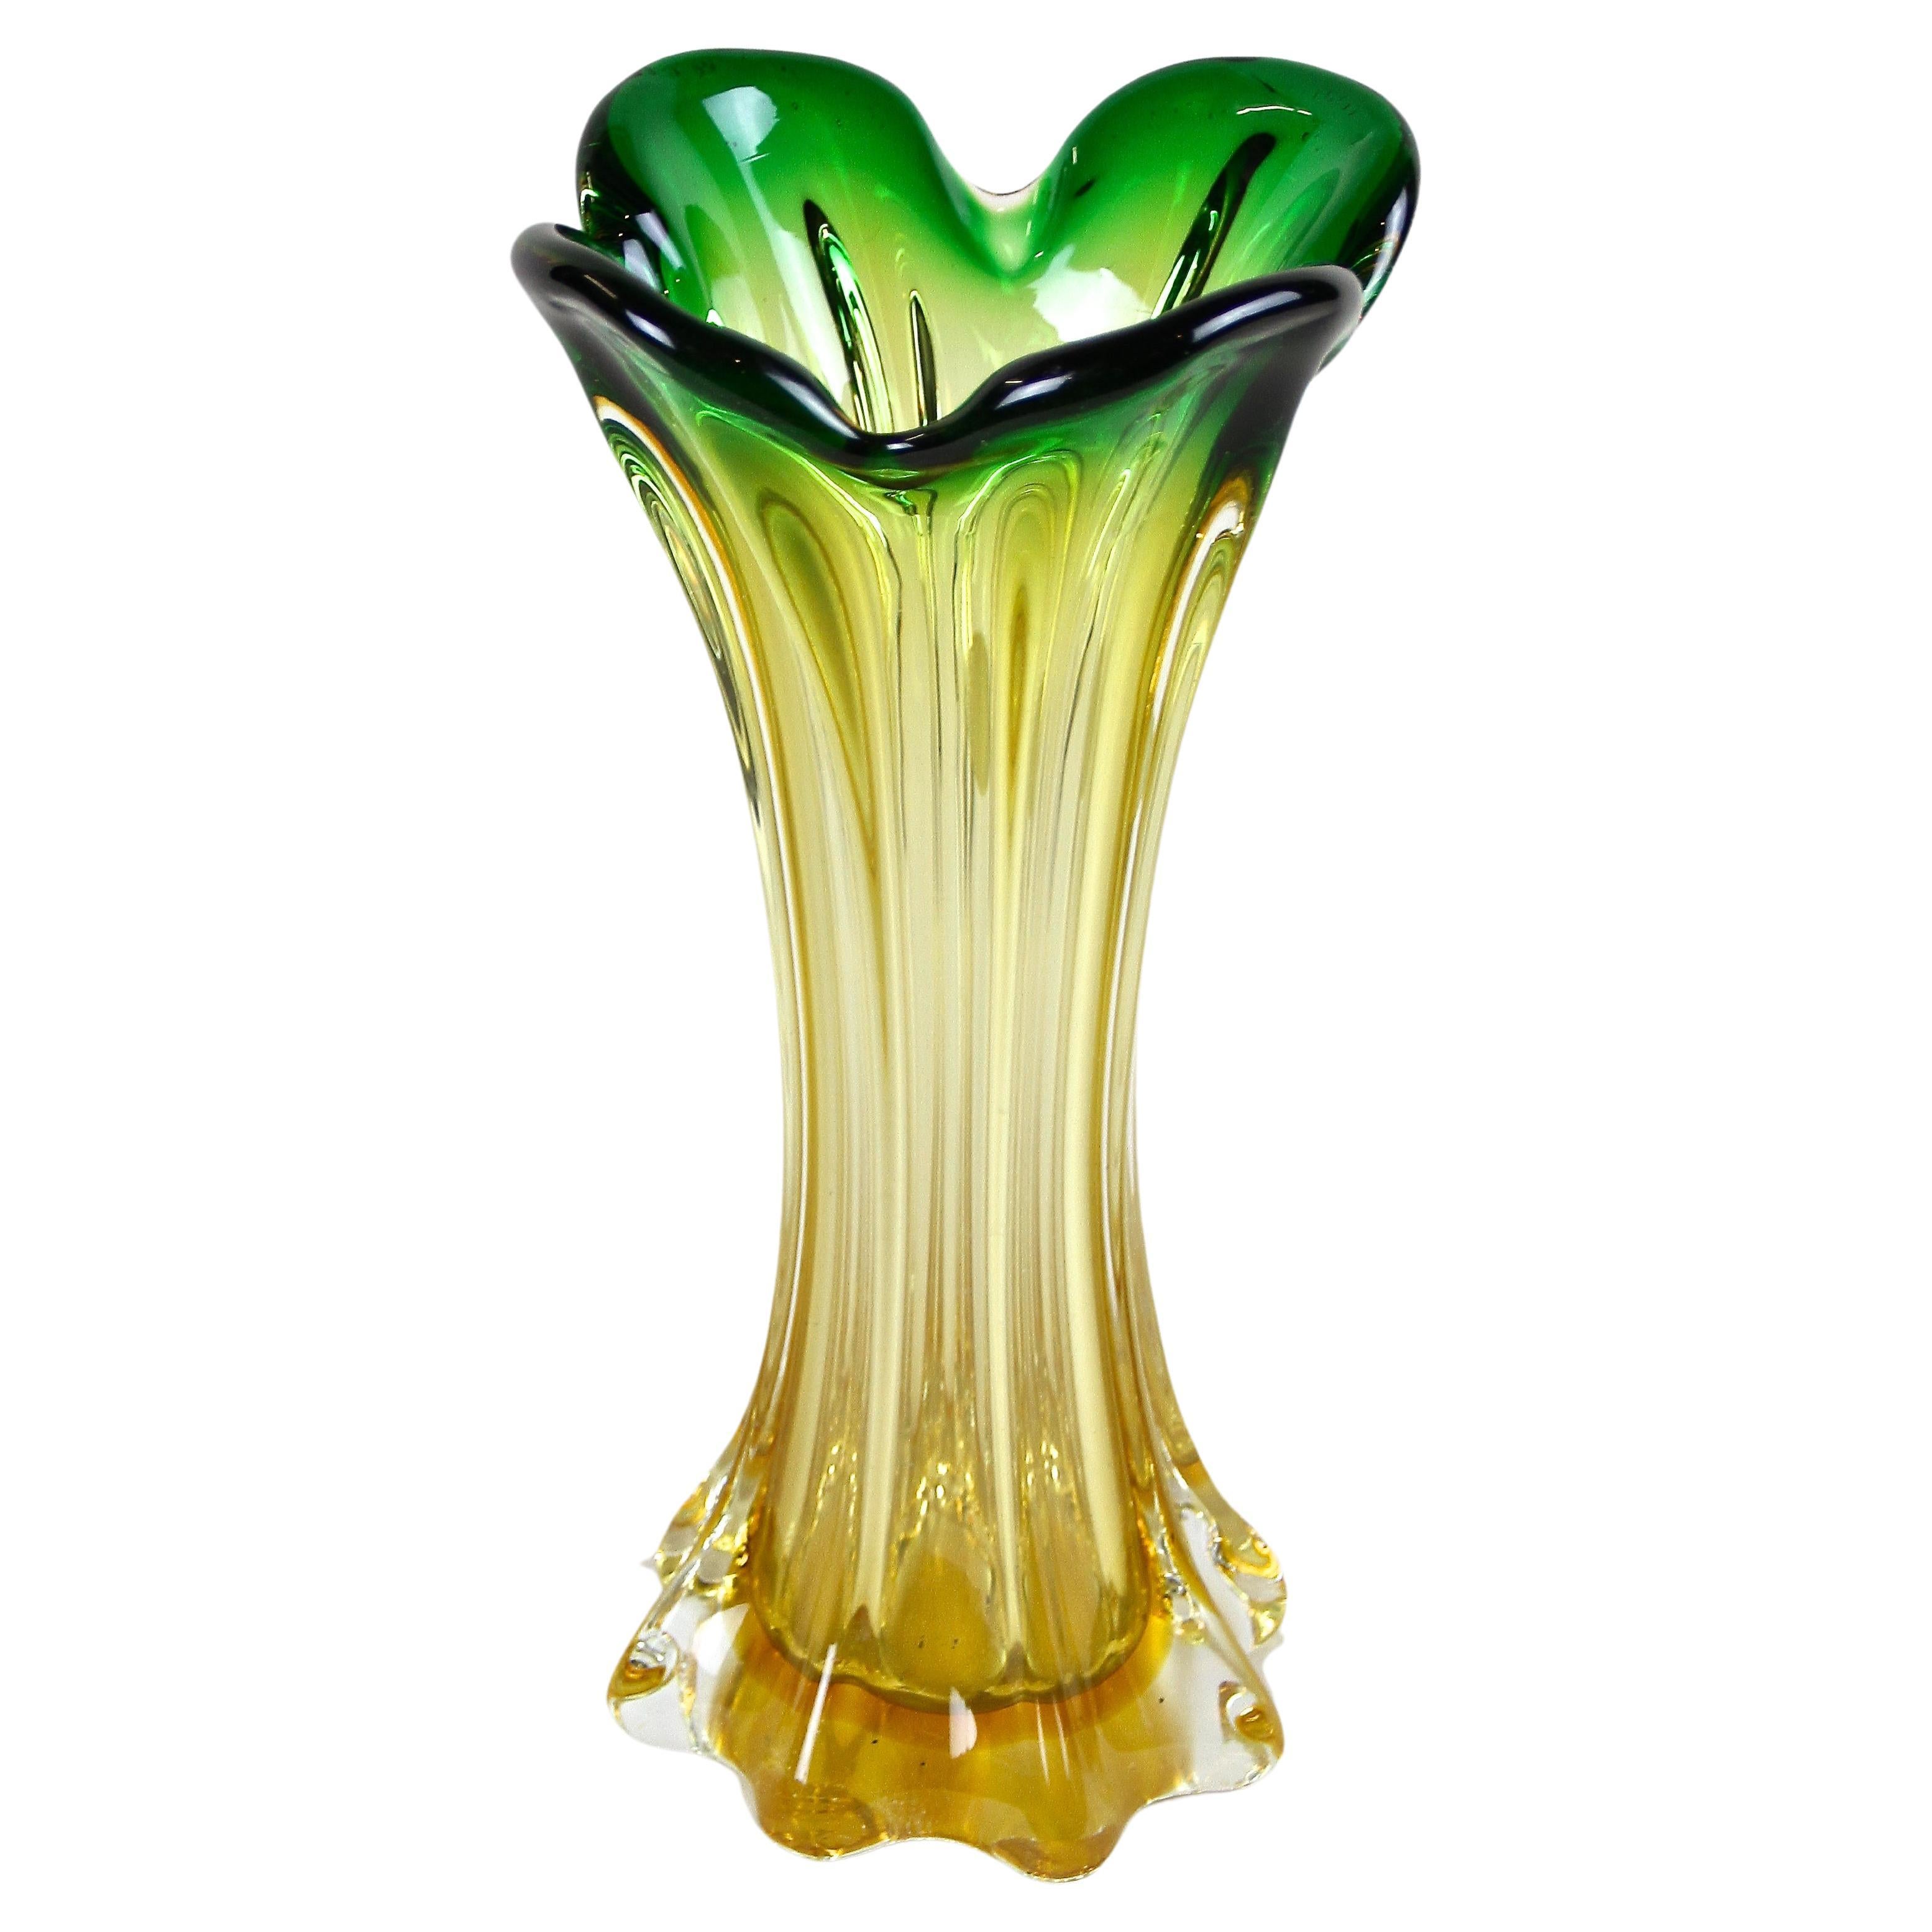 Murano Glass Vase Mid Century Green/ Yellow, Italy, circa 1960/70